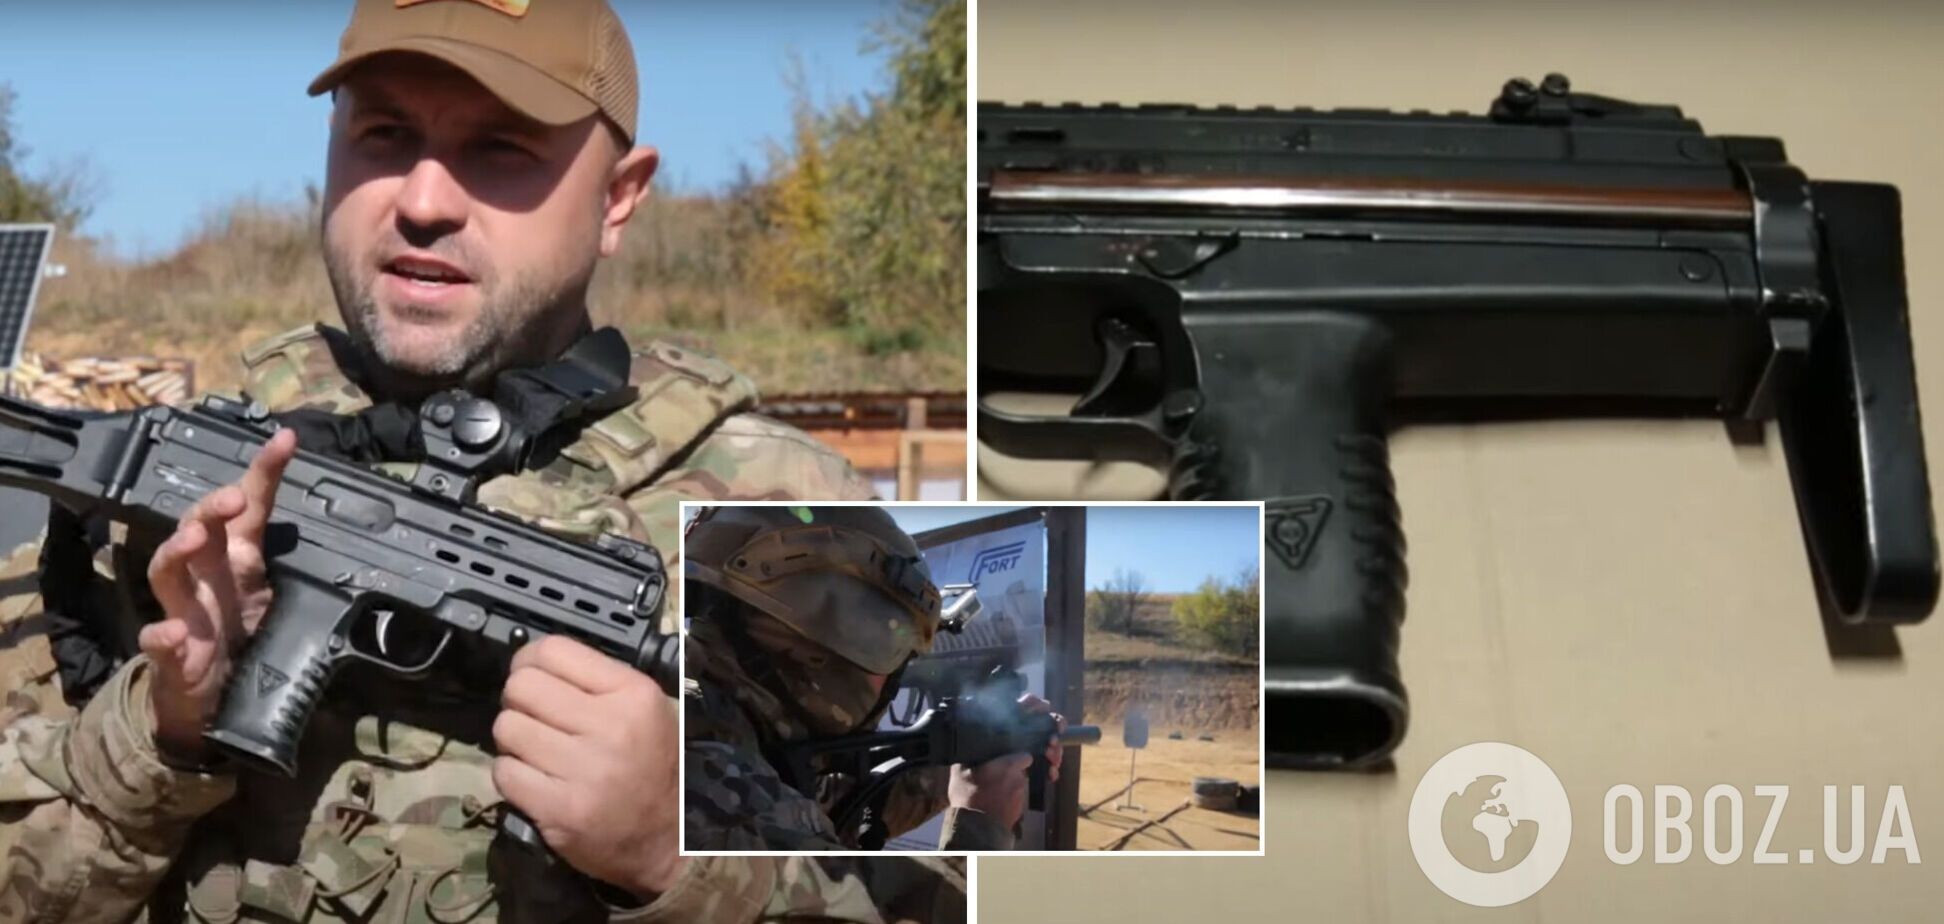 Український пістолет-кулемет 'Форт-230' проходить заводські випробування. Відео